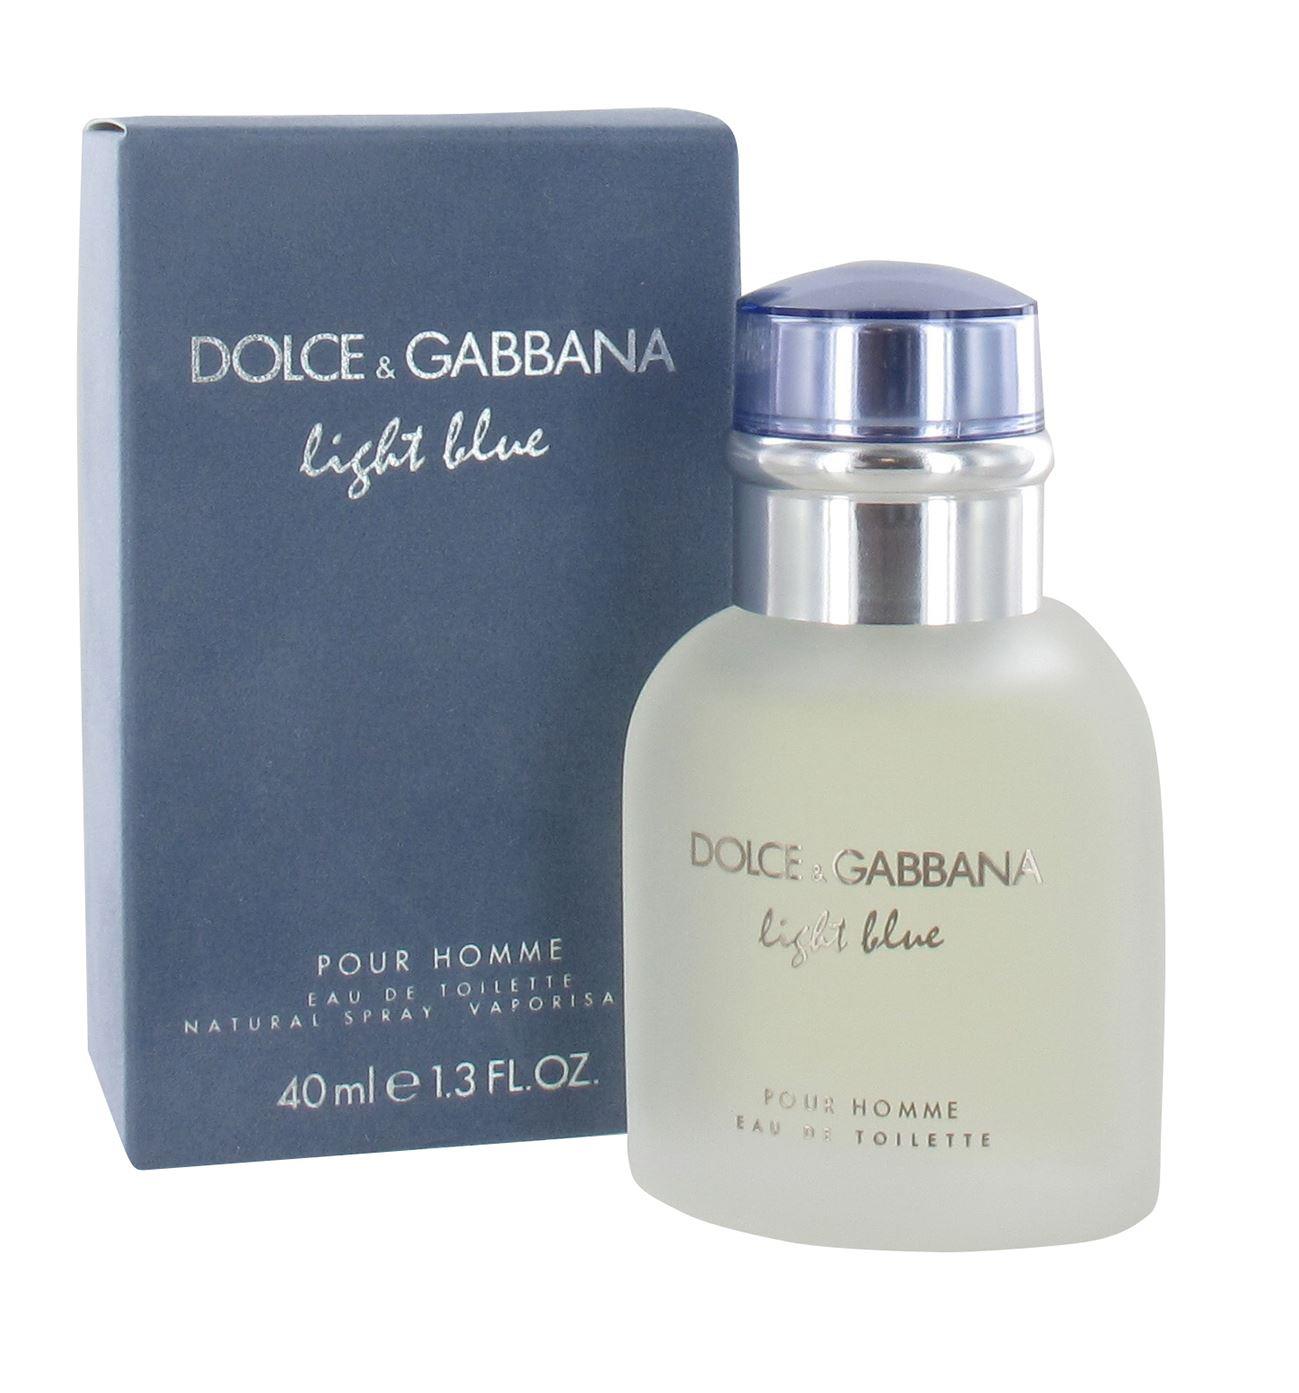 Dolce & Gabbana Light Blue Pour Homme 40ml Eau de Toilette Spray for Him from Perfume Plus Direct